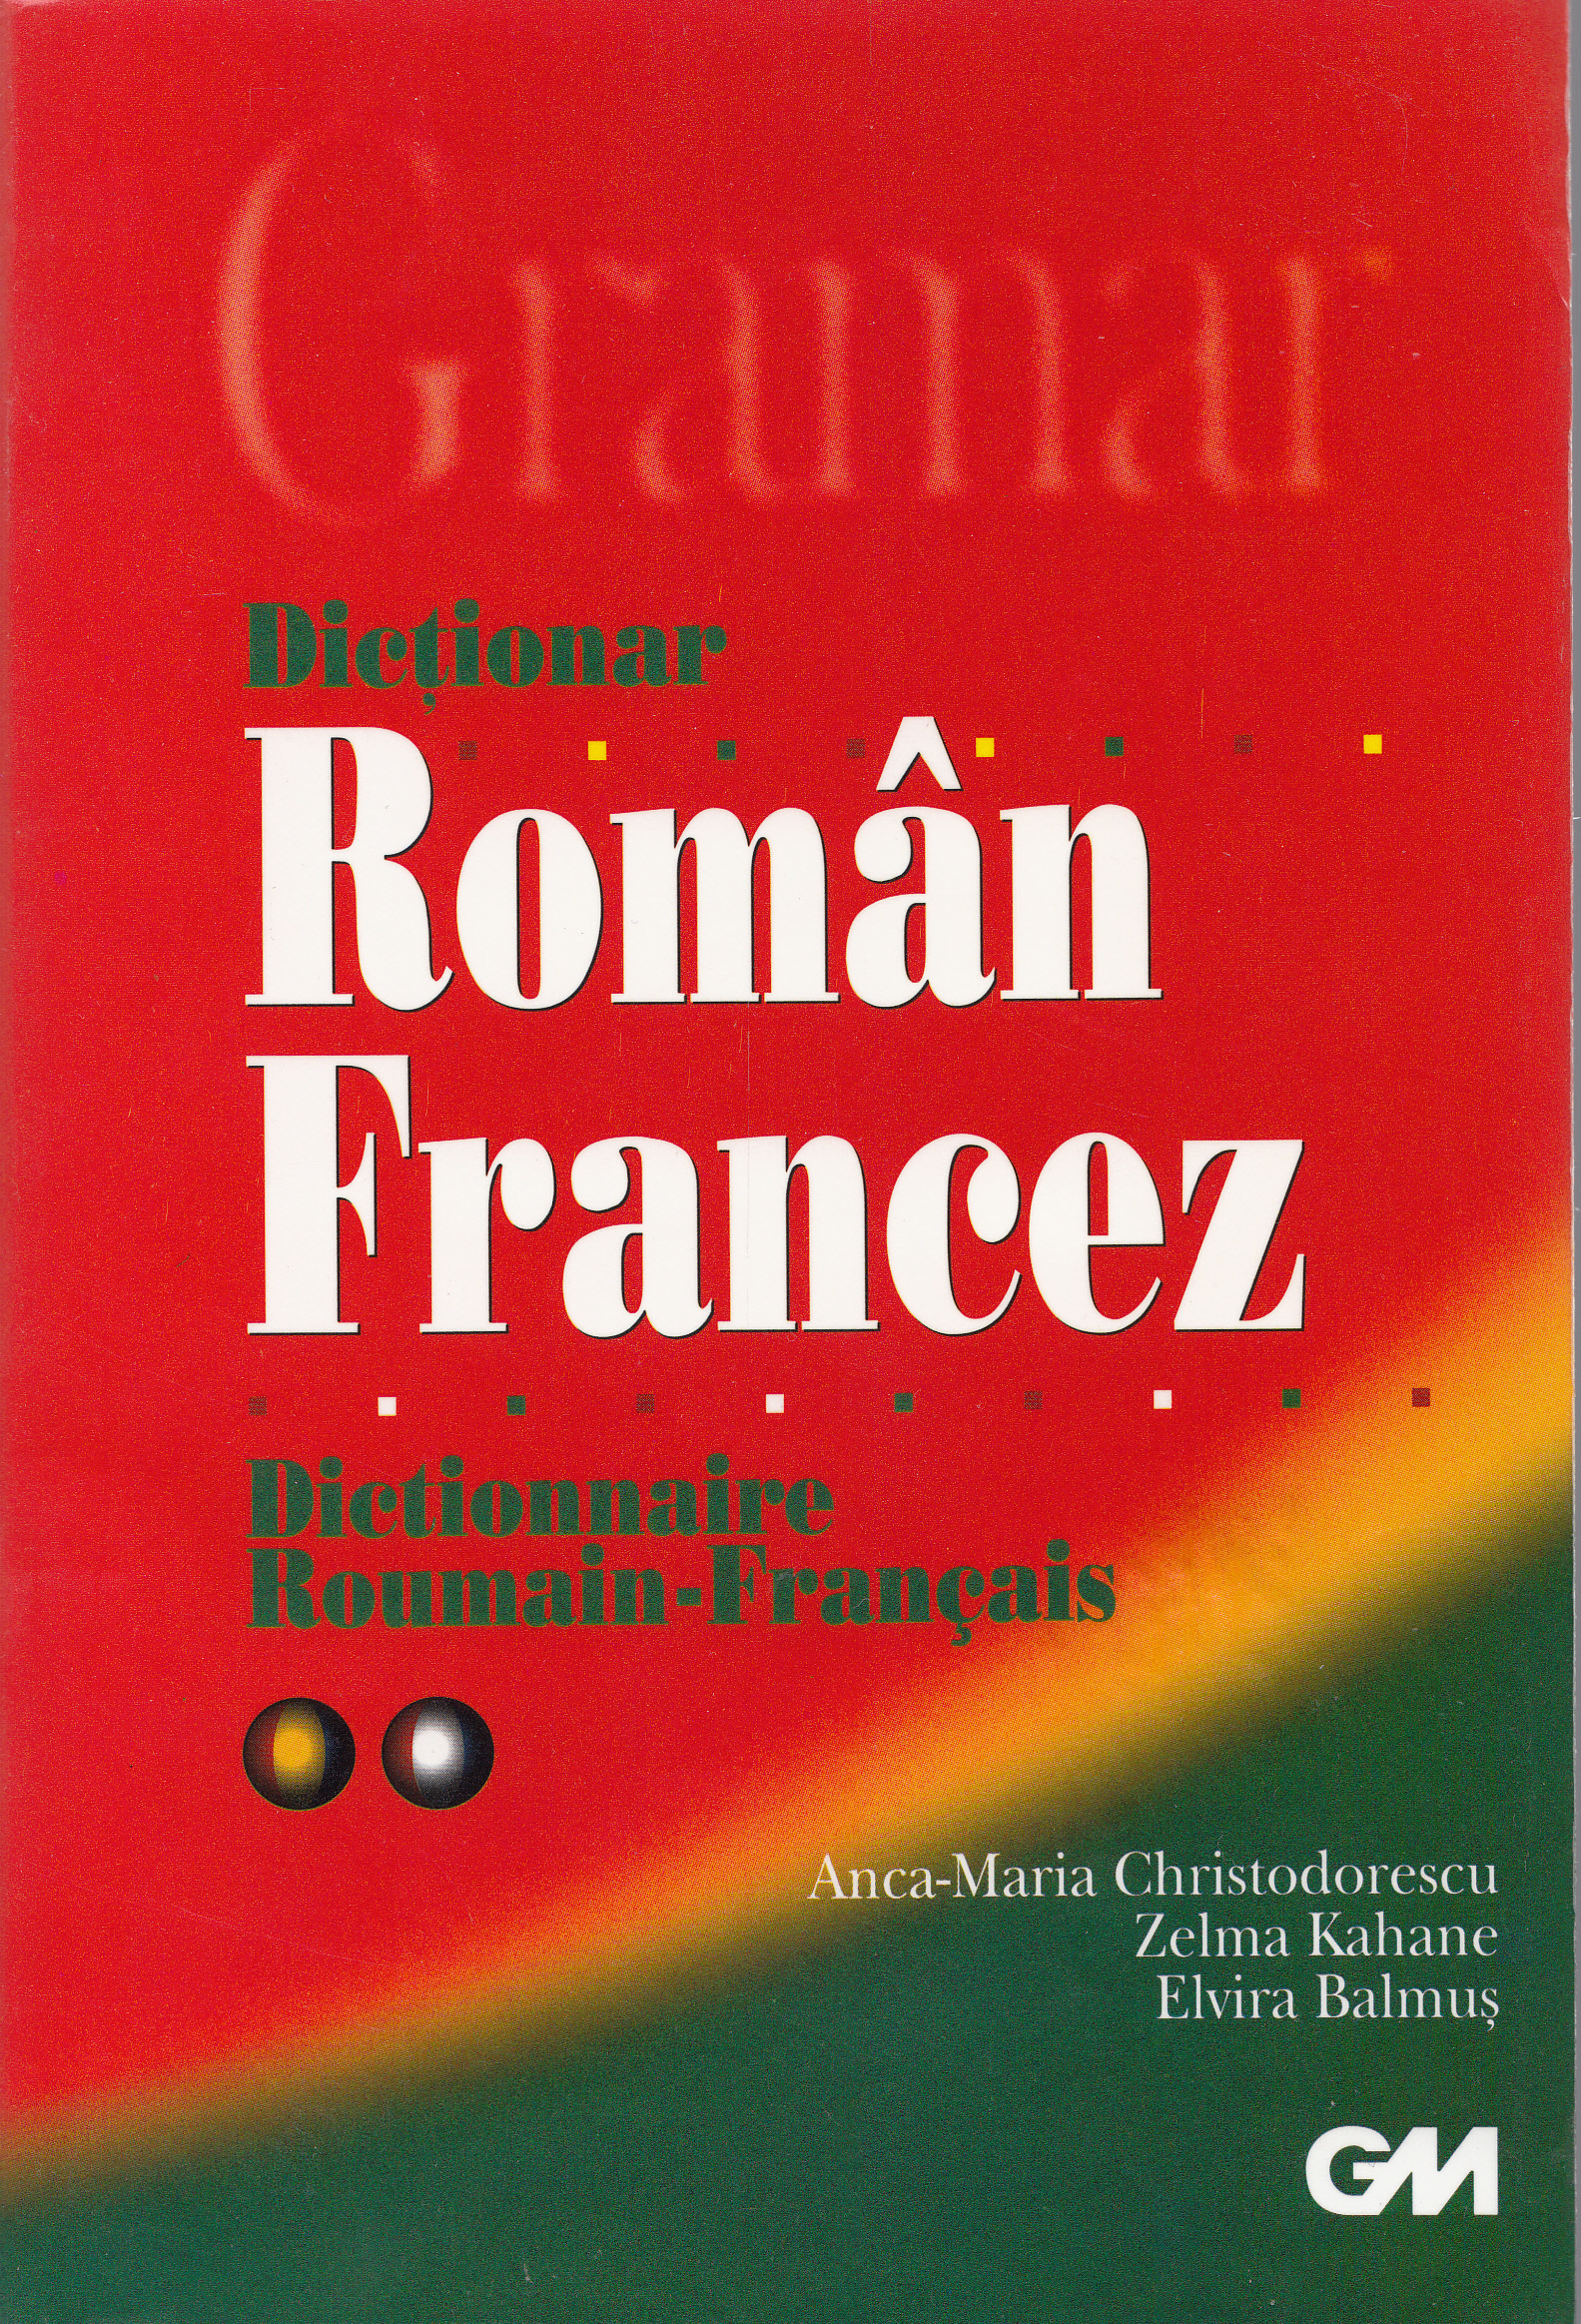 Dictionar roman-francez - Anca-Maria Christodorescu